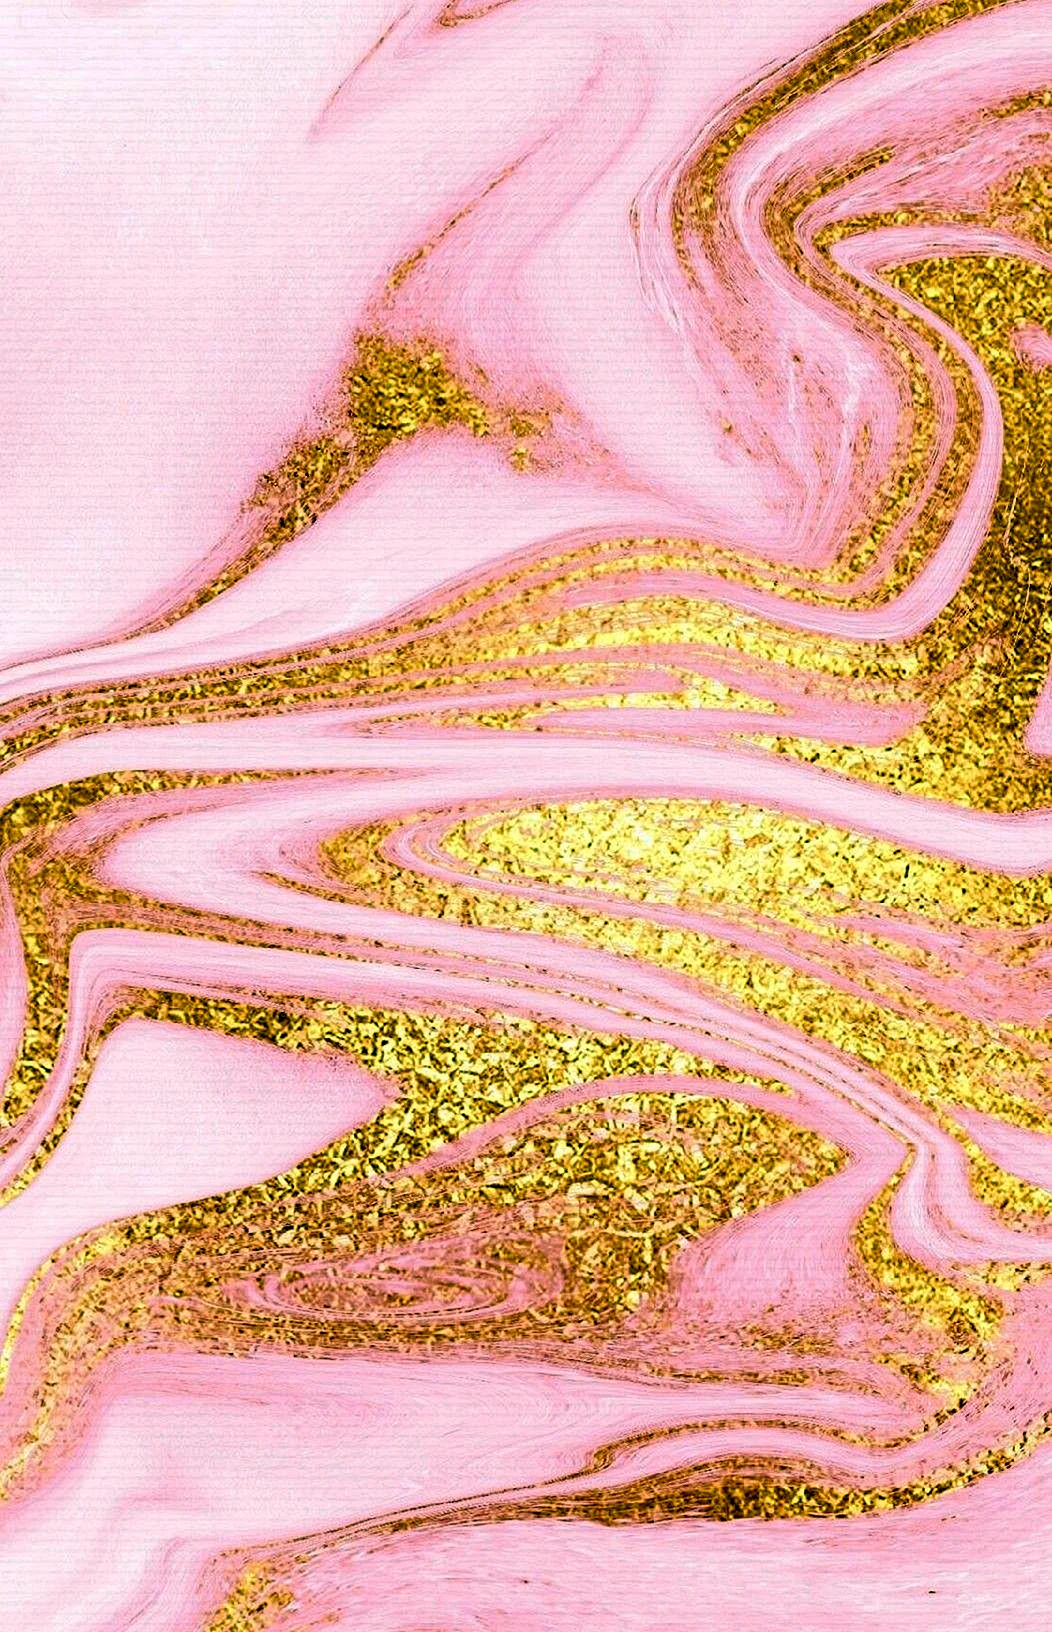 Розовое золото (Pink Gold) Pacific